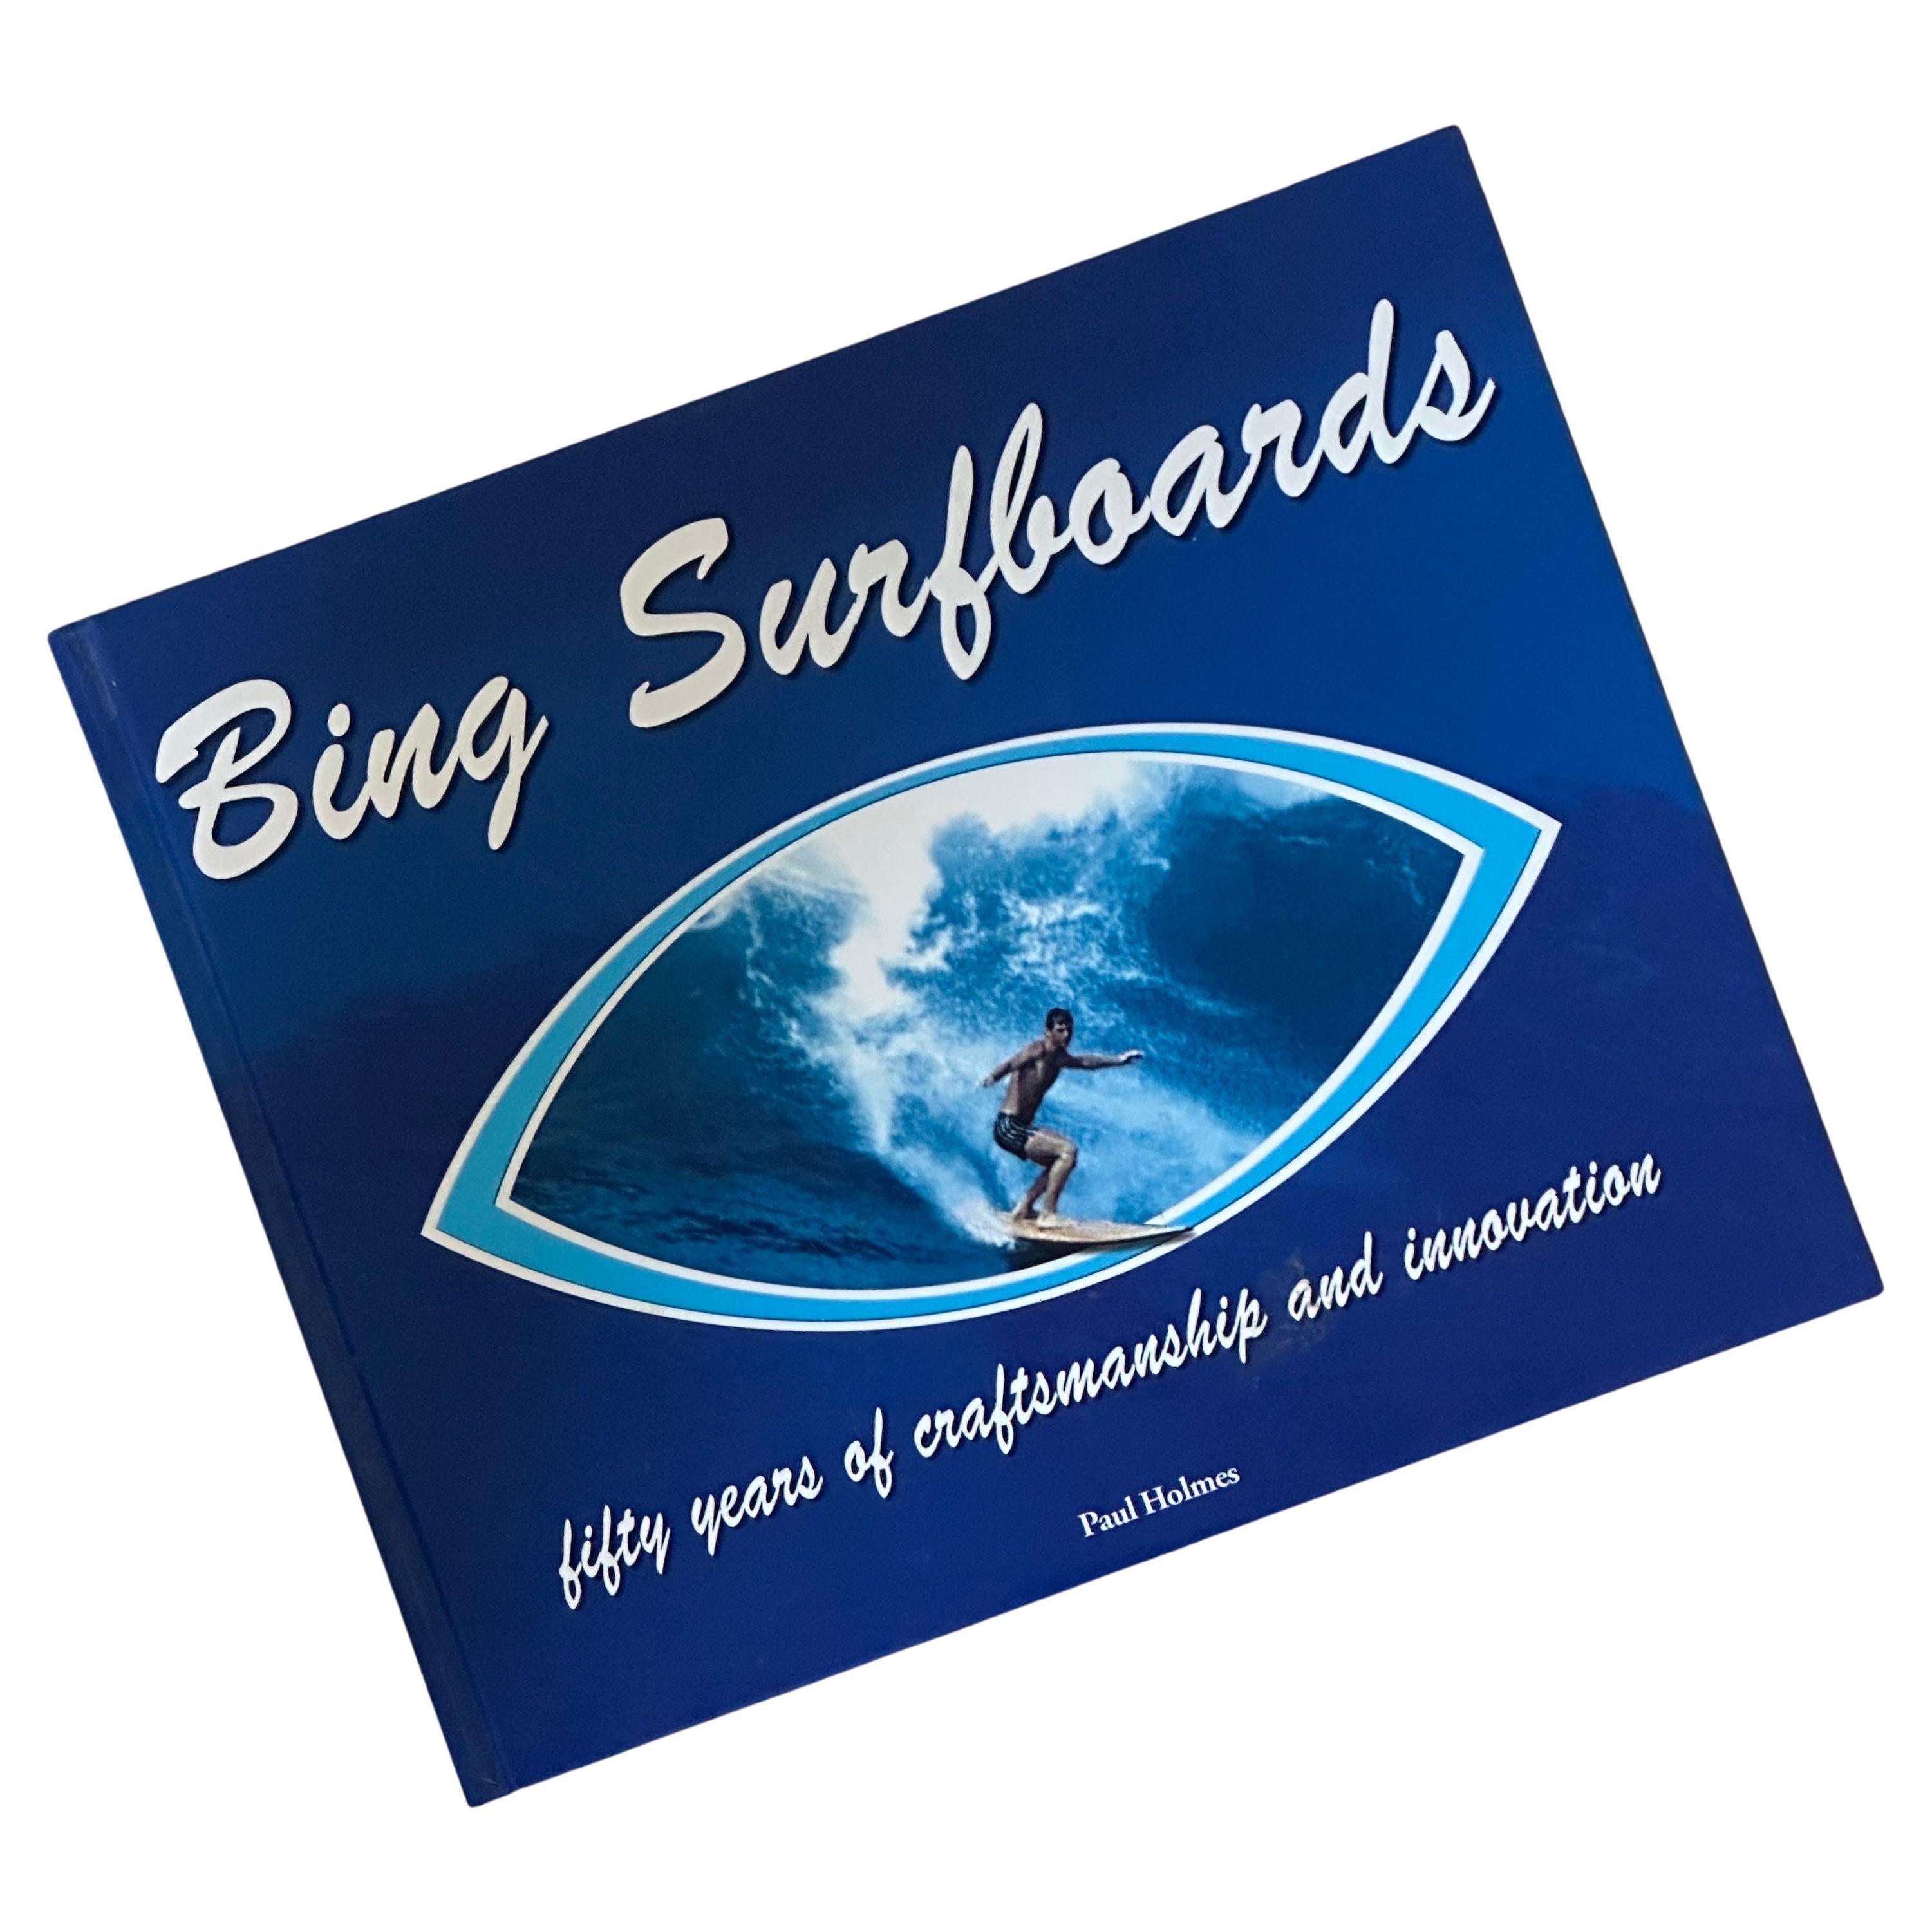 Livre "Bing Surfboards" signé par Paul Hoimes et signé par Bing Copeland - première édition en vente